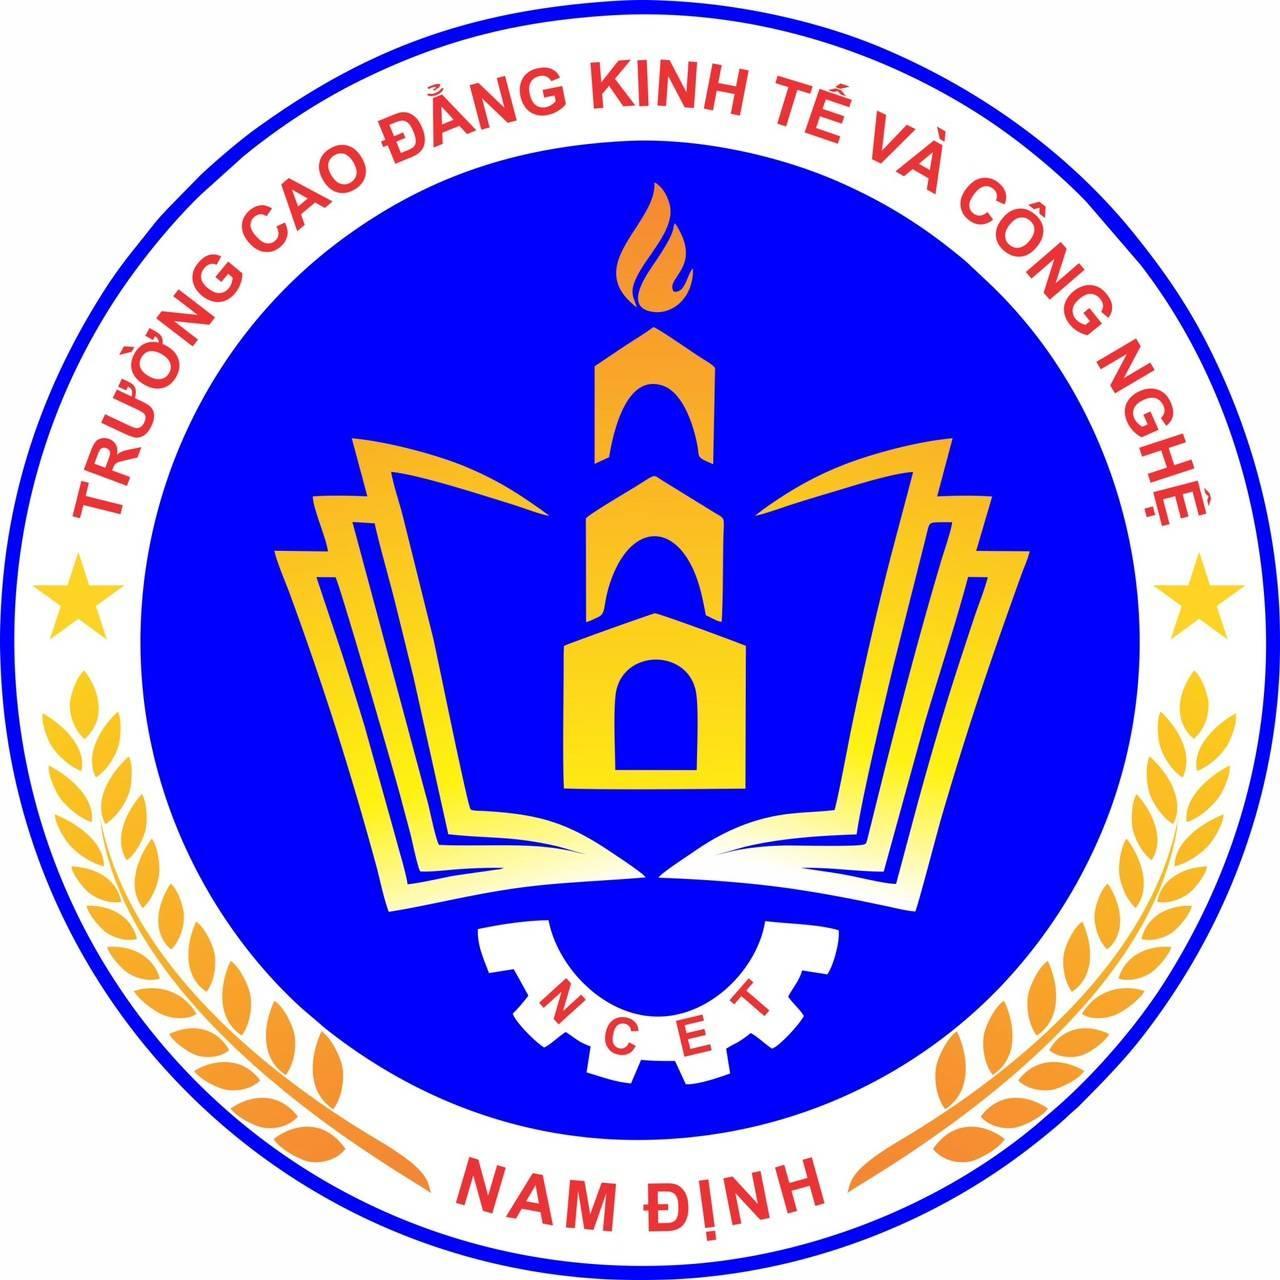 Trường Cao đẳng Kinh tế và Công nghệ Nam Định